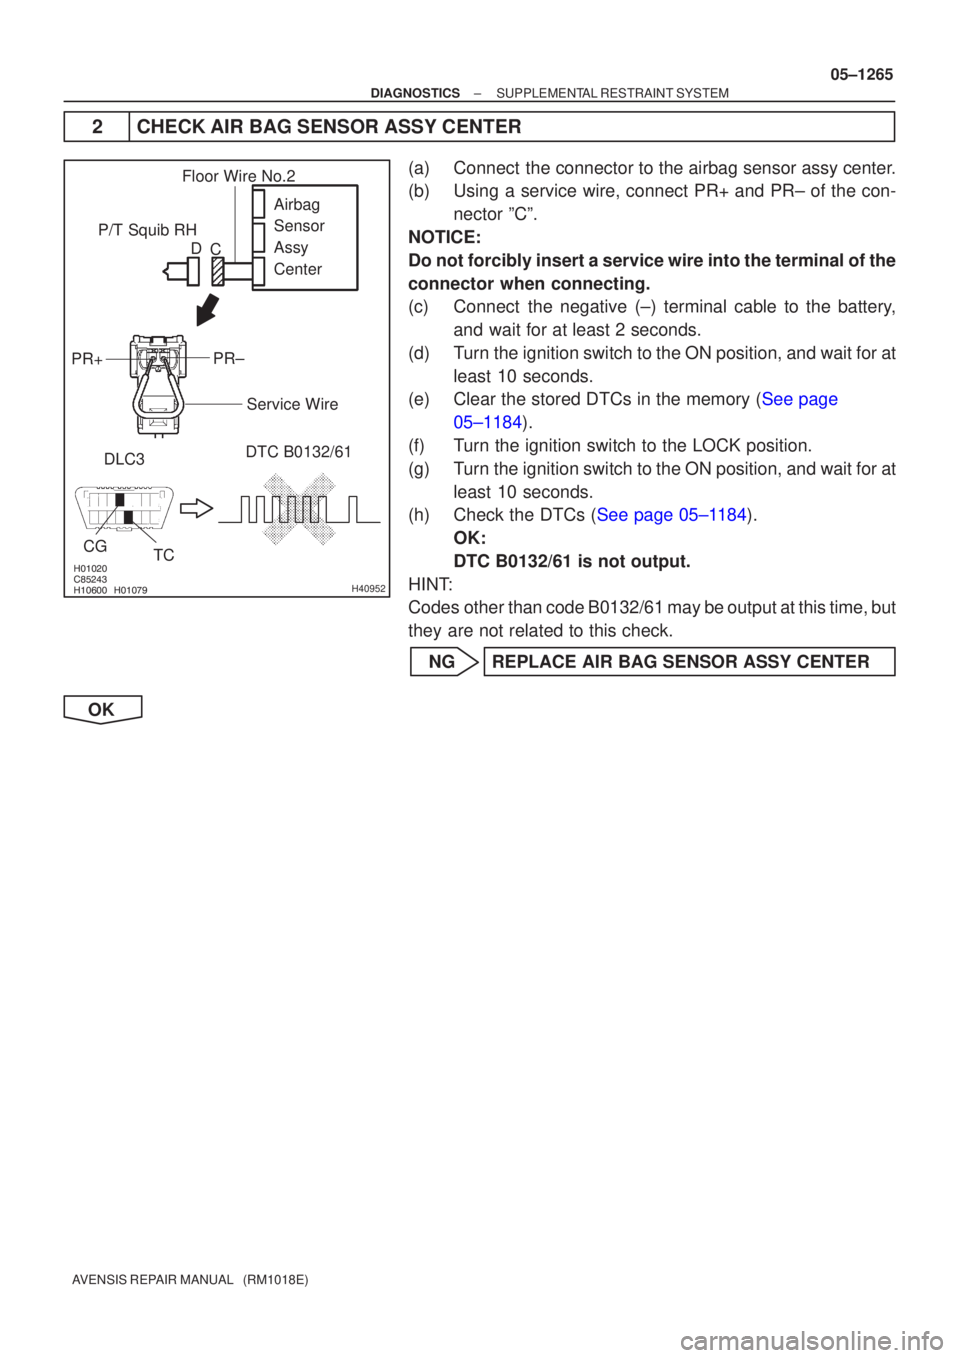 TOYOTA AVENSIS 2005  Service Repair Manual \f
	
\f \f\b

H40952
P/T Squib RHDLC3 DTC B0132/61
TC
CG
Airbag 
Sensor 
Assy 
Center
PR±
PR+
Floor Wire No.2
Service Wire
C
D
±
DIAGNOSTICS SUPPLEMENTAL RESTRAINT SYSTEM
05±1265
